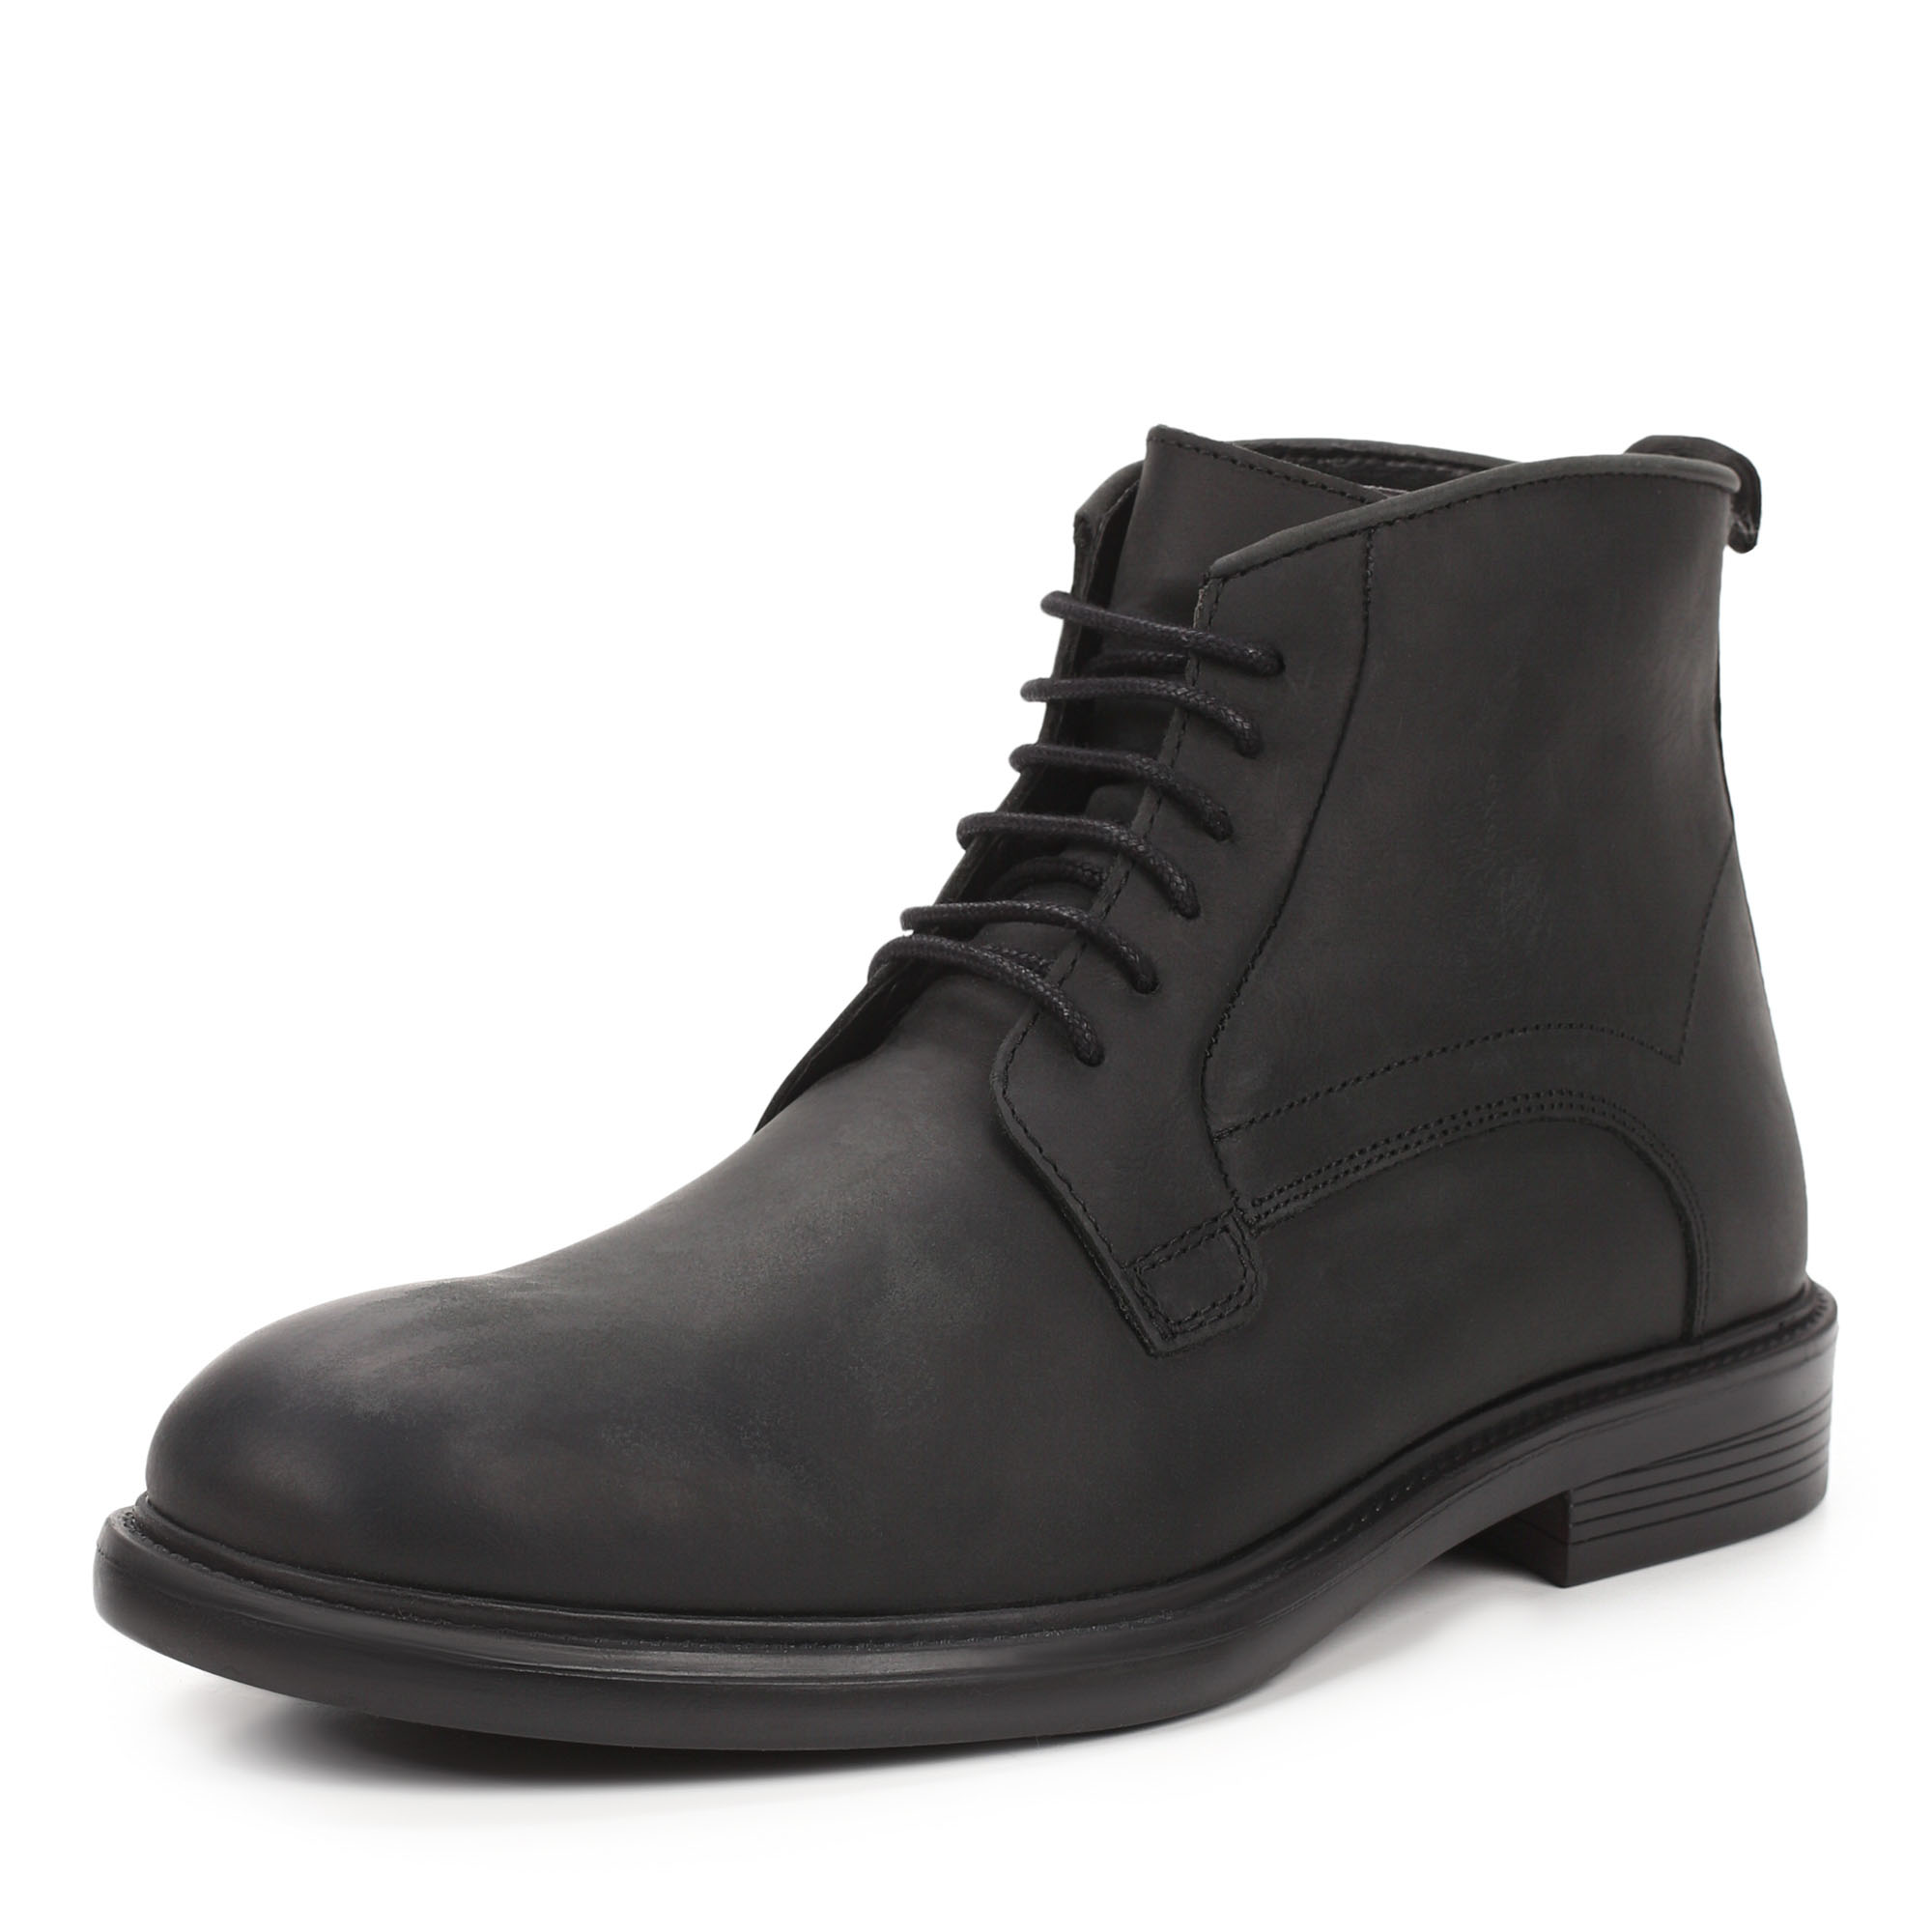 Ботинки Thomas Munz 569-029C-2102, цвет черный, размер 41 - фото 2